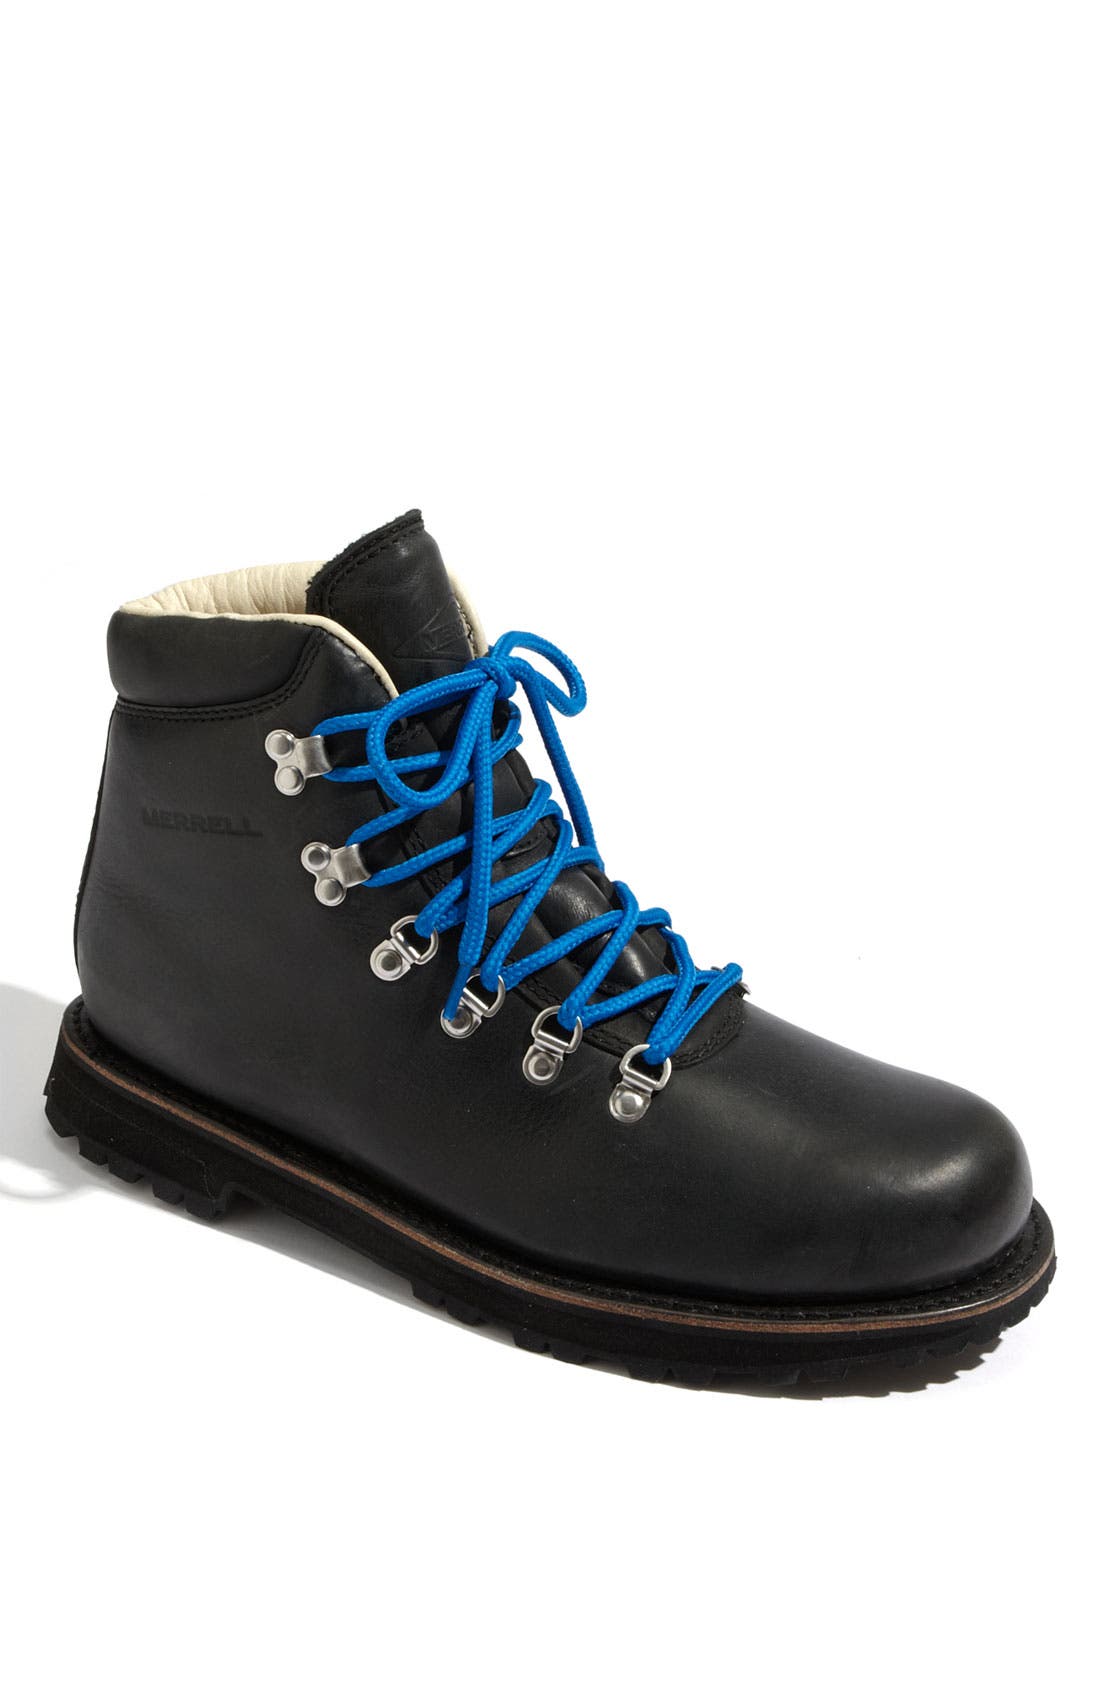 Merrell 'Wilderness Canyon' Boot (Men 